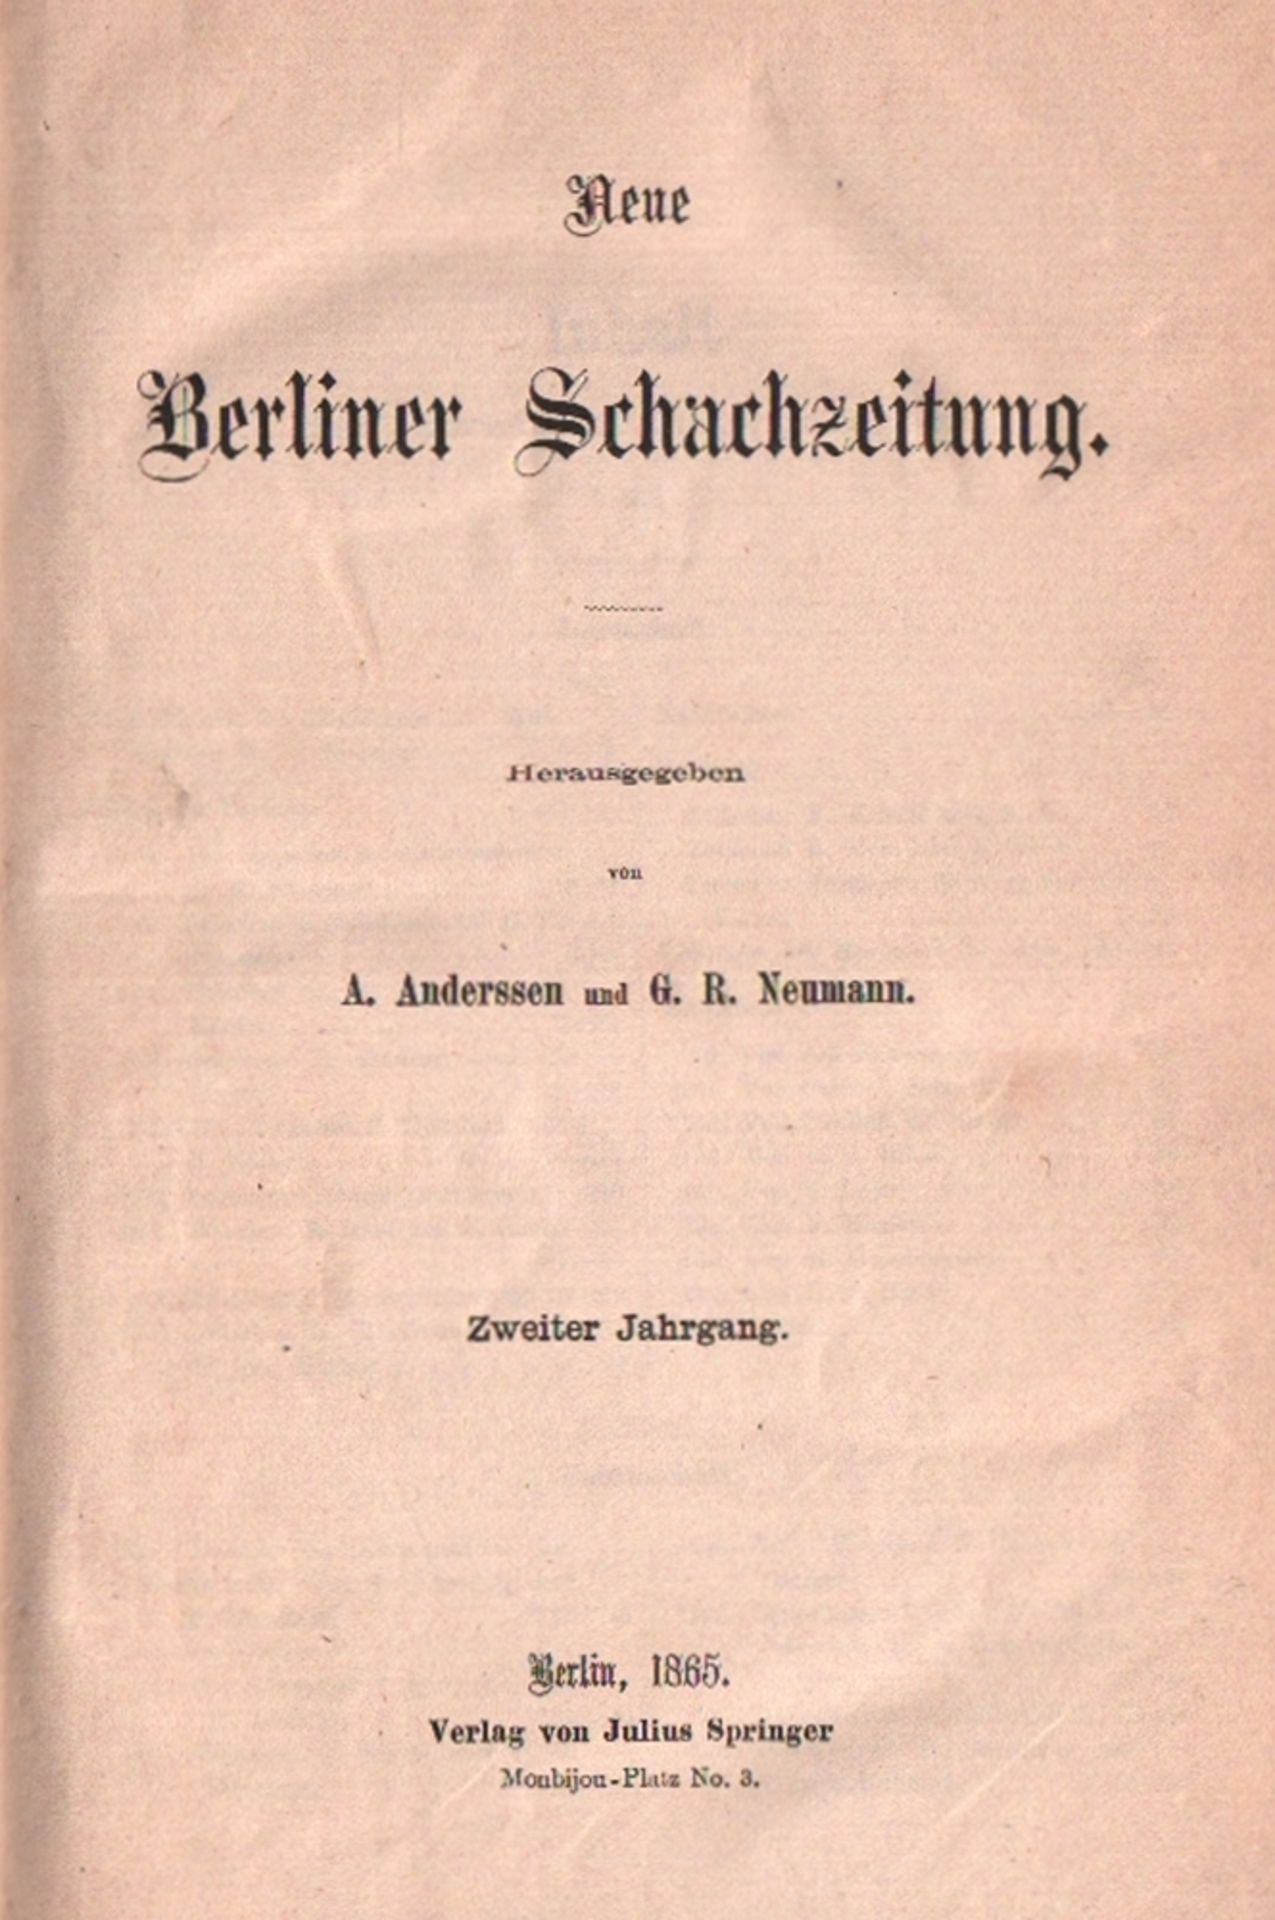 Neue Berliner Schachzeitung. Hrsg. von A. Anderssen und G. R. Neumann. 2. Jahrgang 1865. Berlin,